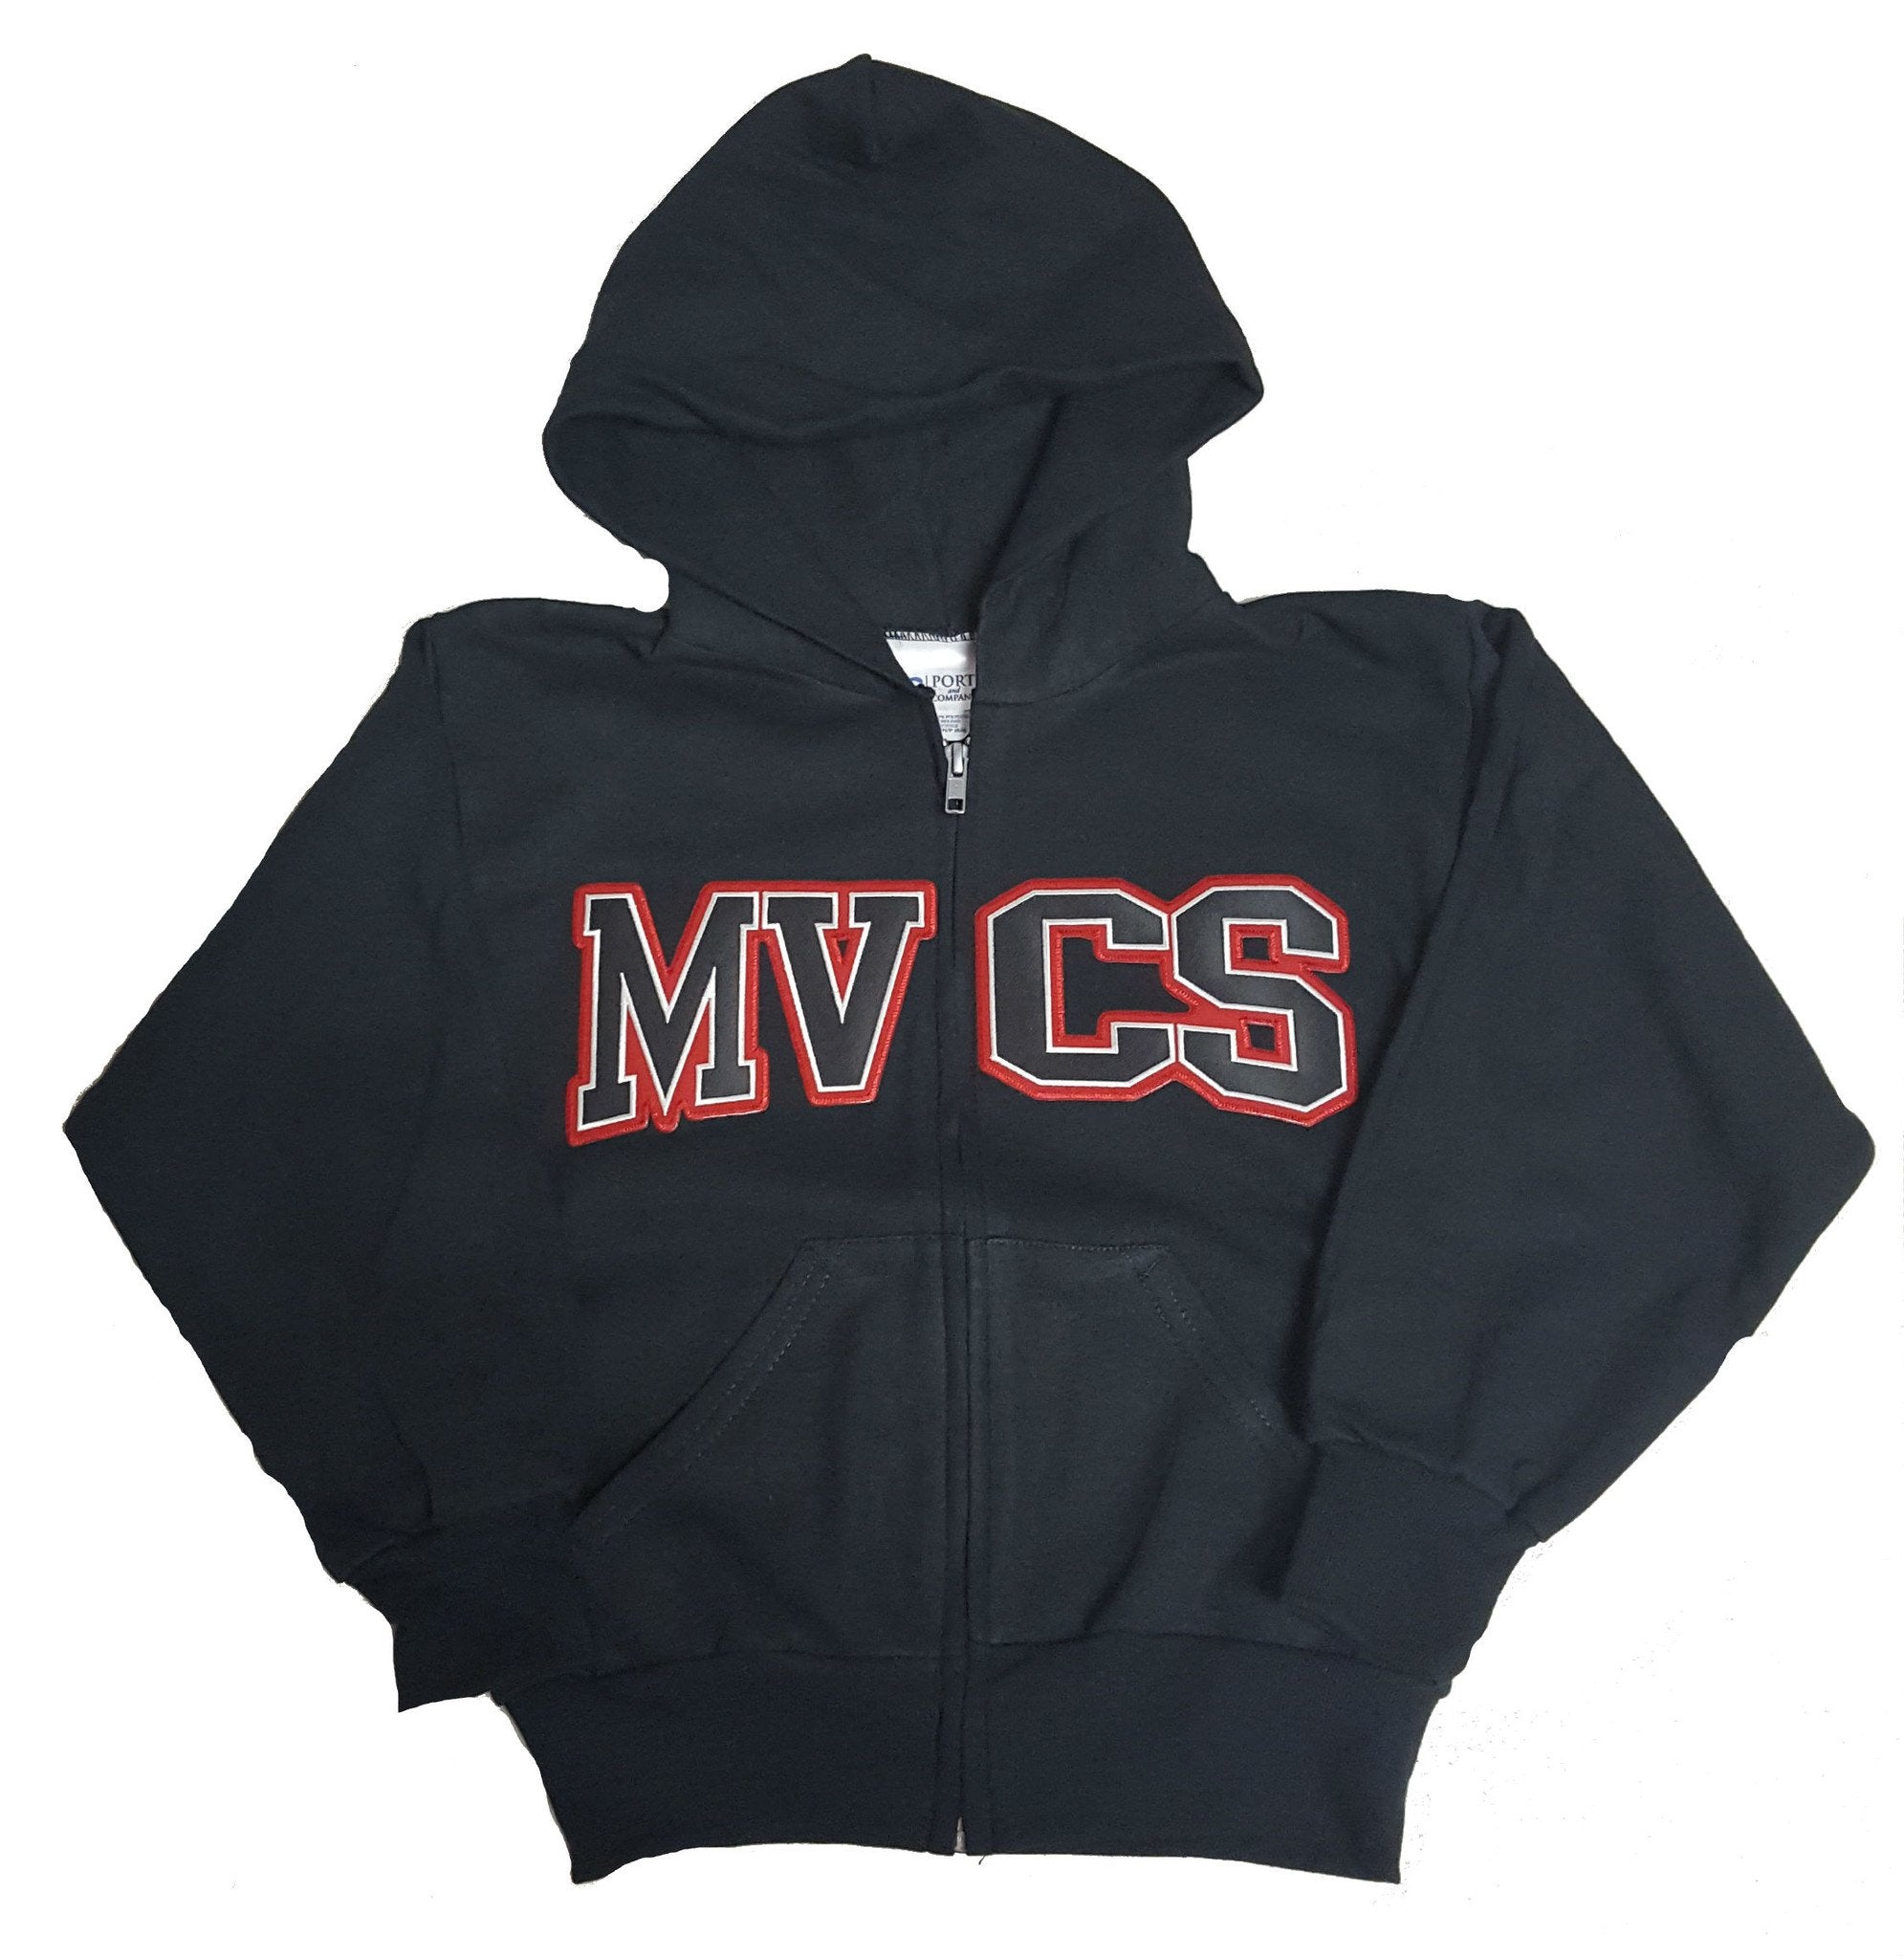 MVCS Zip Front Hoodie Sweatshirt